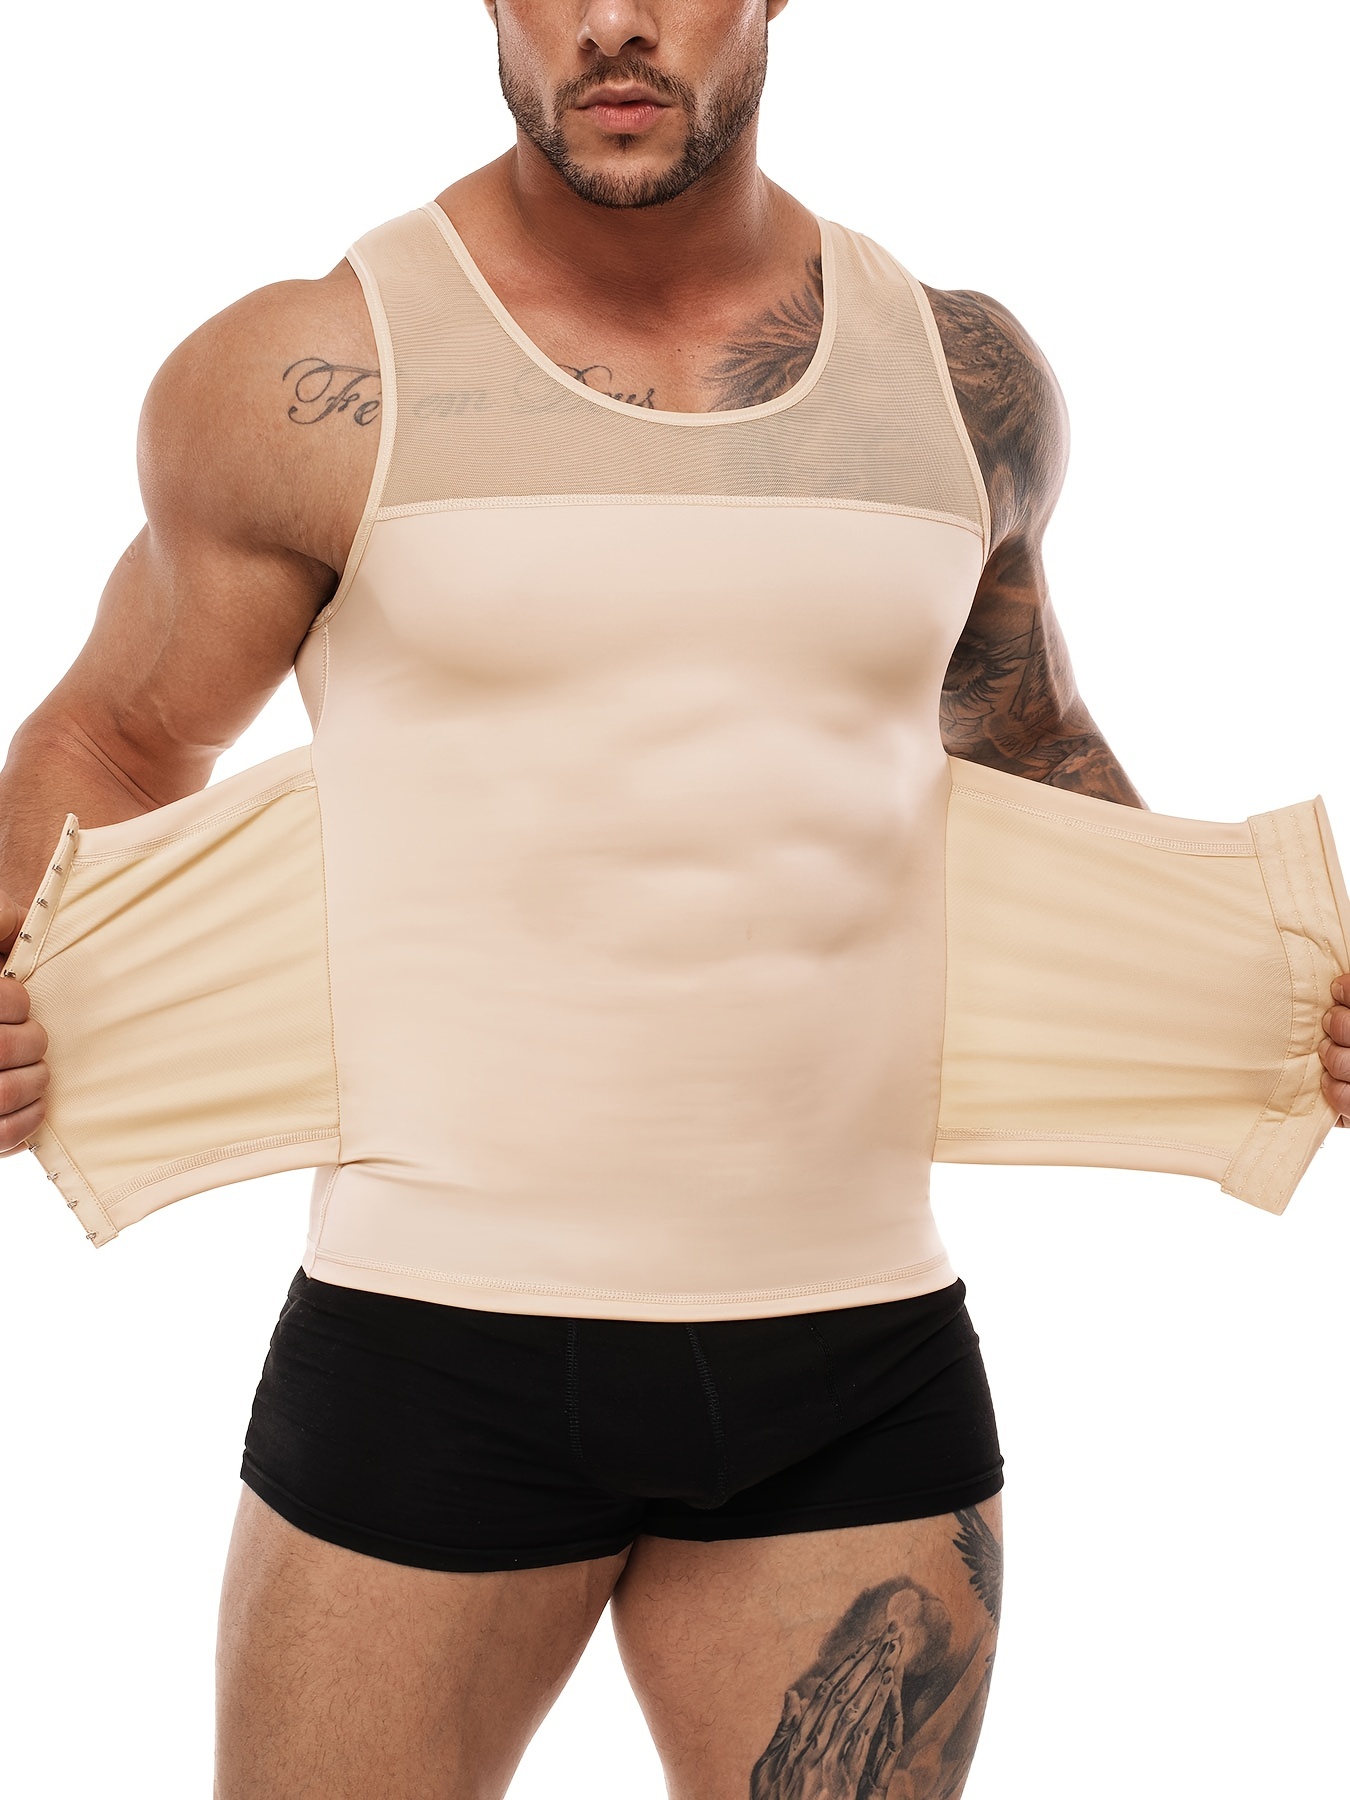 Camisetas reductoras para hombres, corsés de control de abdomen, prendas  moldeadoras de cuerpo, fajas de control de vientre para fitness y deportes